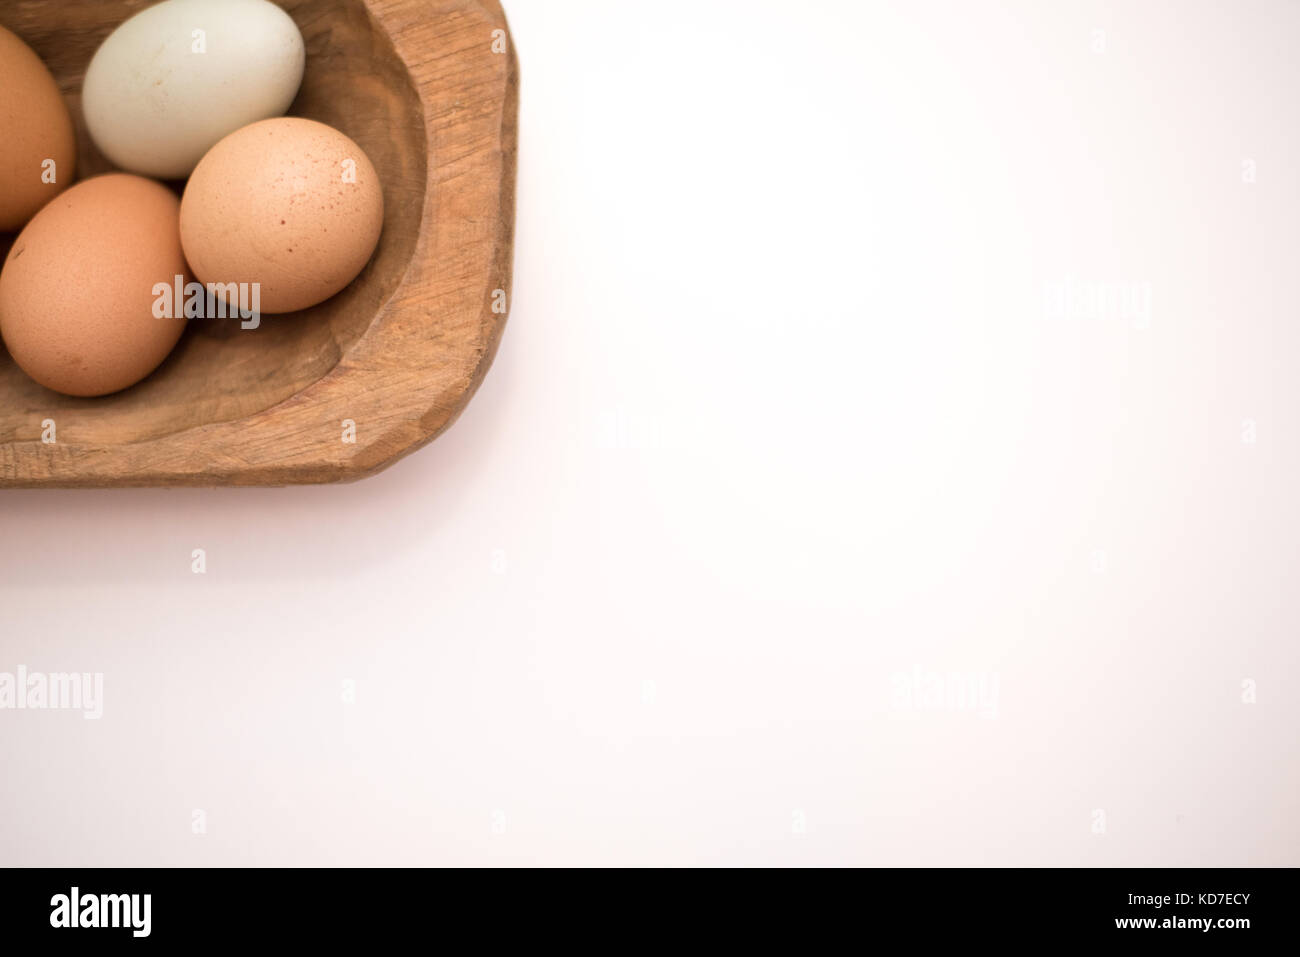 Organische frische Eier vom Bauernhof in einem Vintage Brown Bread bowl auf einem weißen Hintergrund. Großartig für Hintergründe und Werbung. Stockfoto